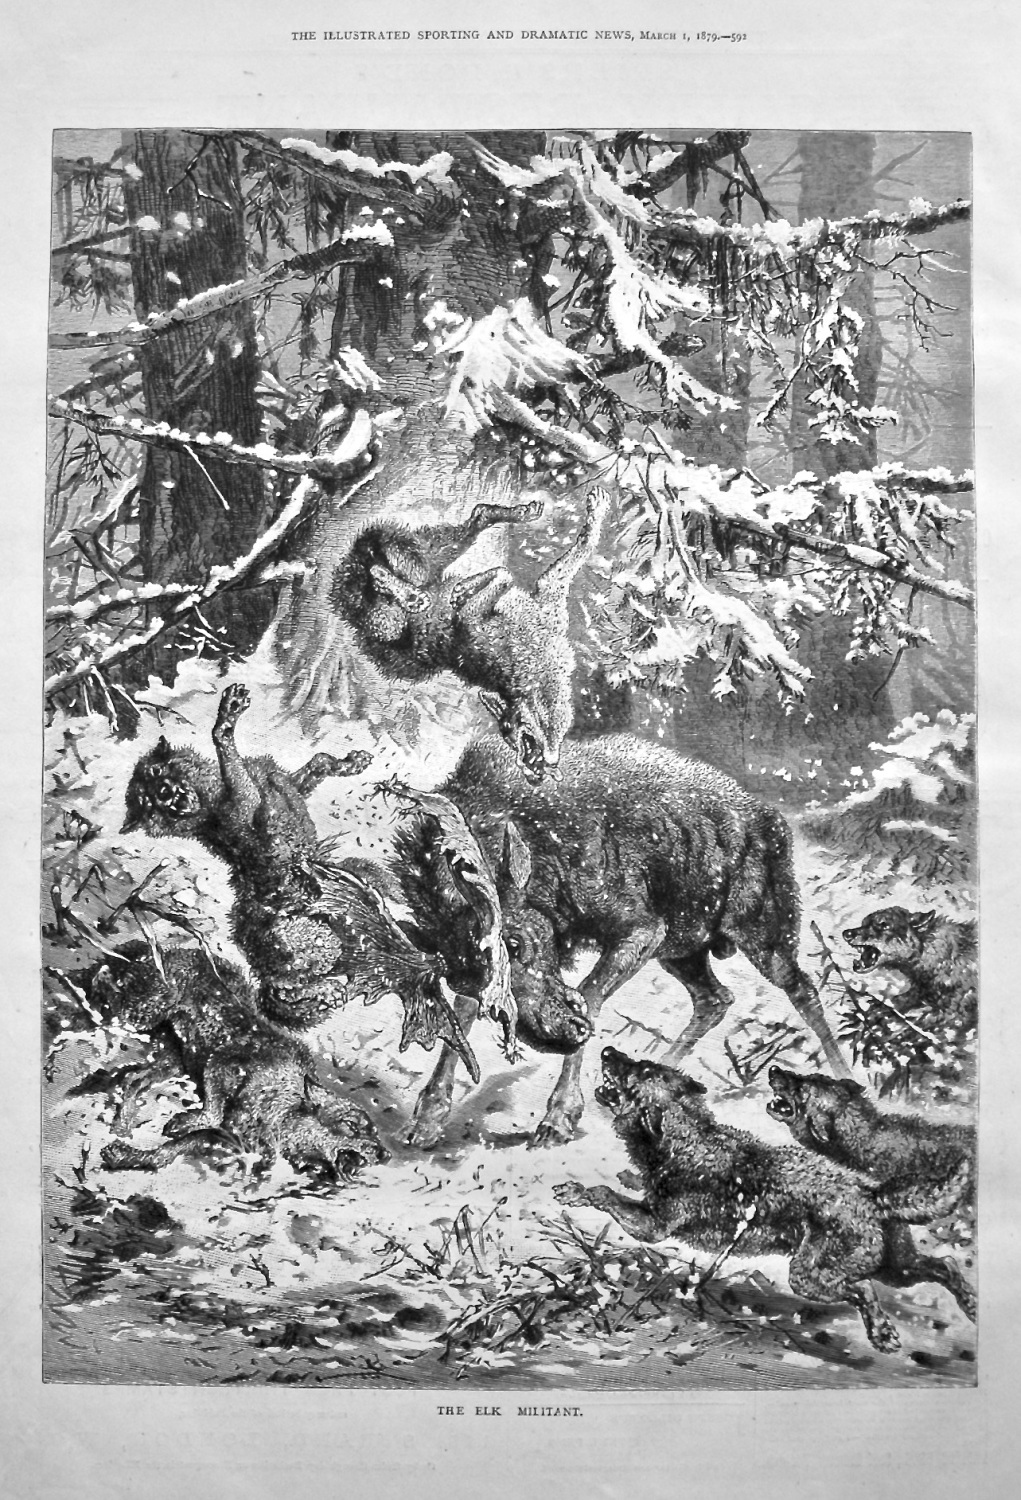 The Elk Militant. 1879.